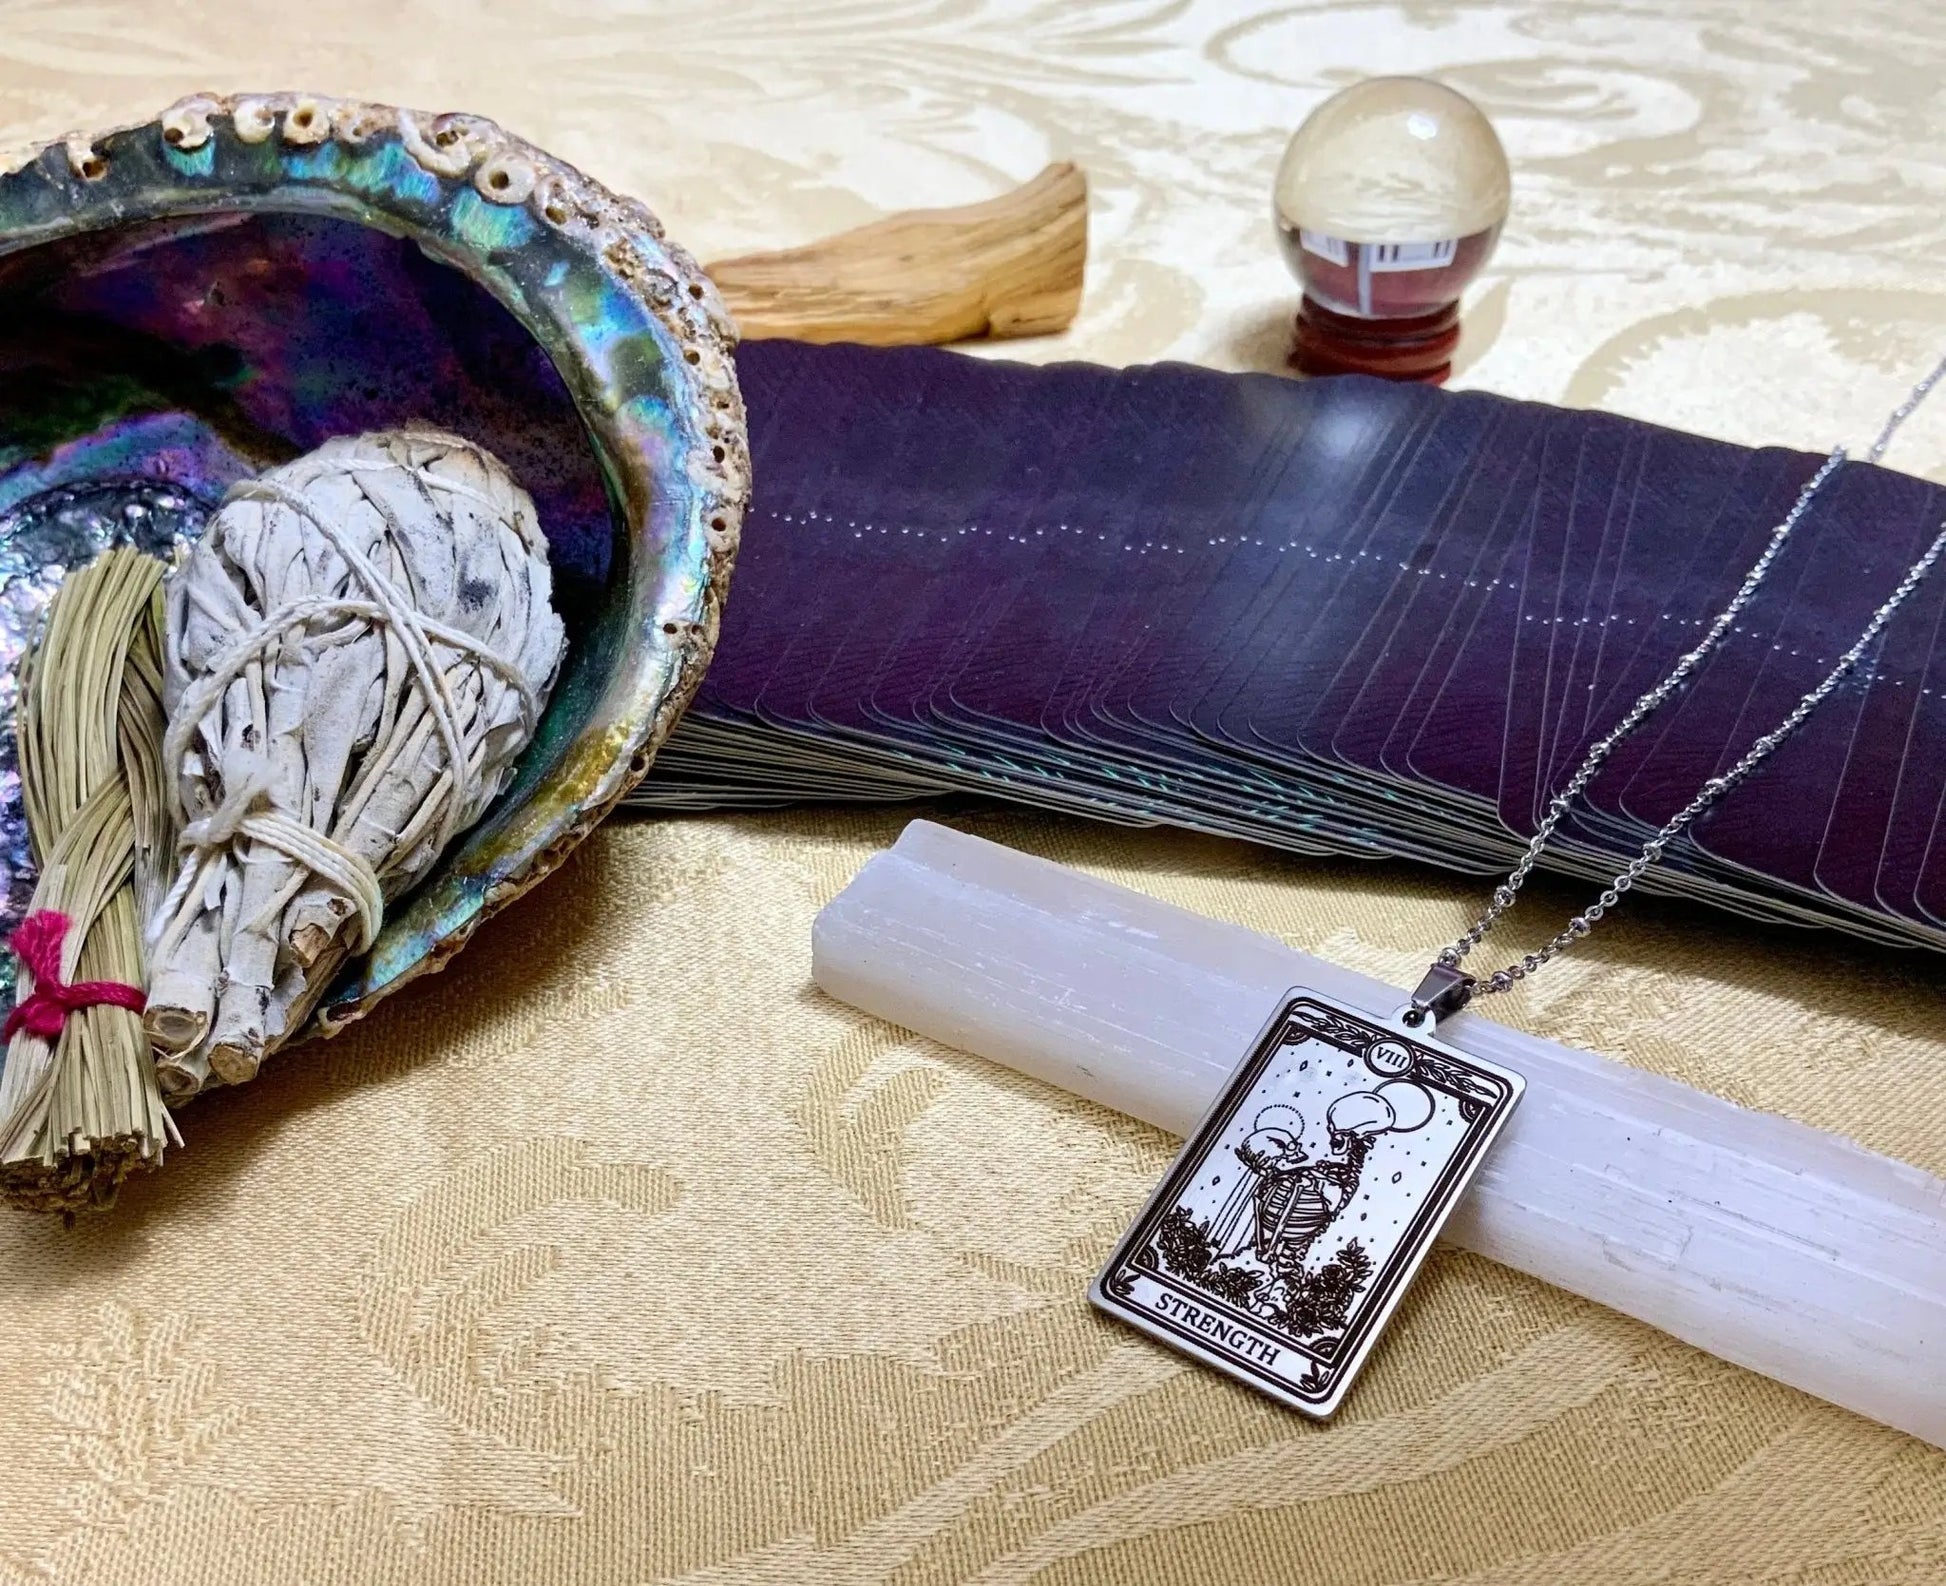 strength tarot card necklace pendant - silver tarot